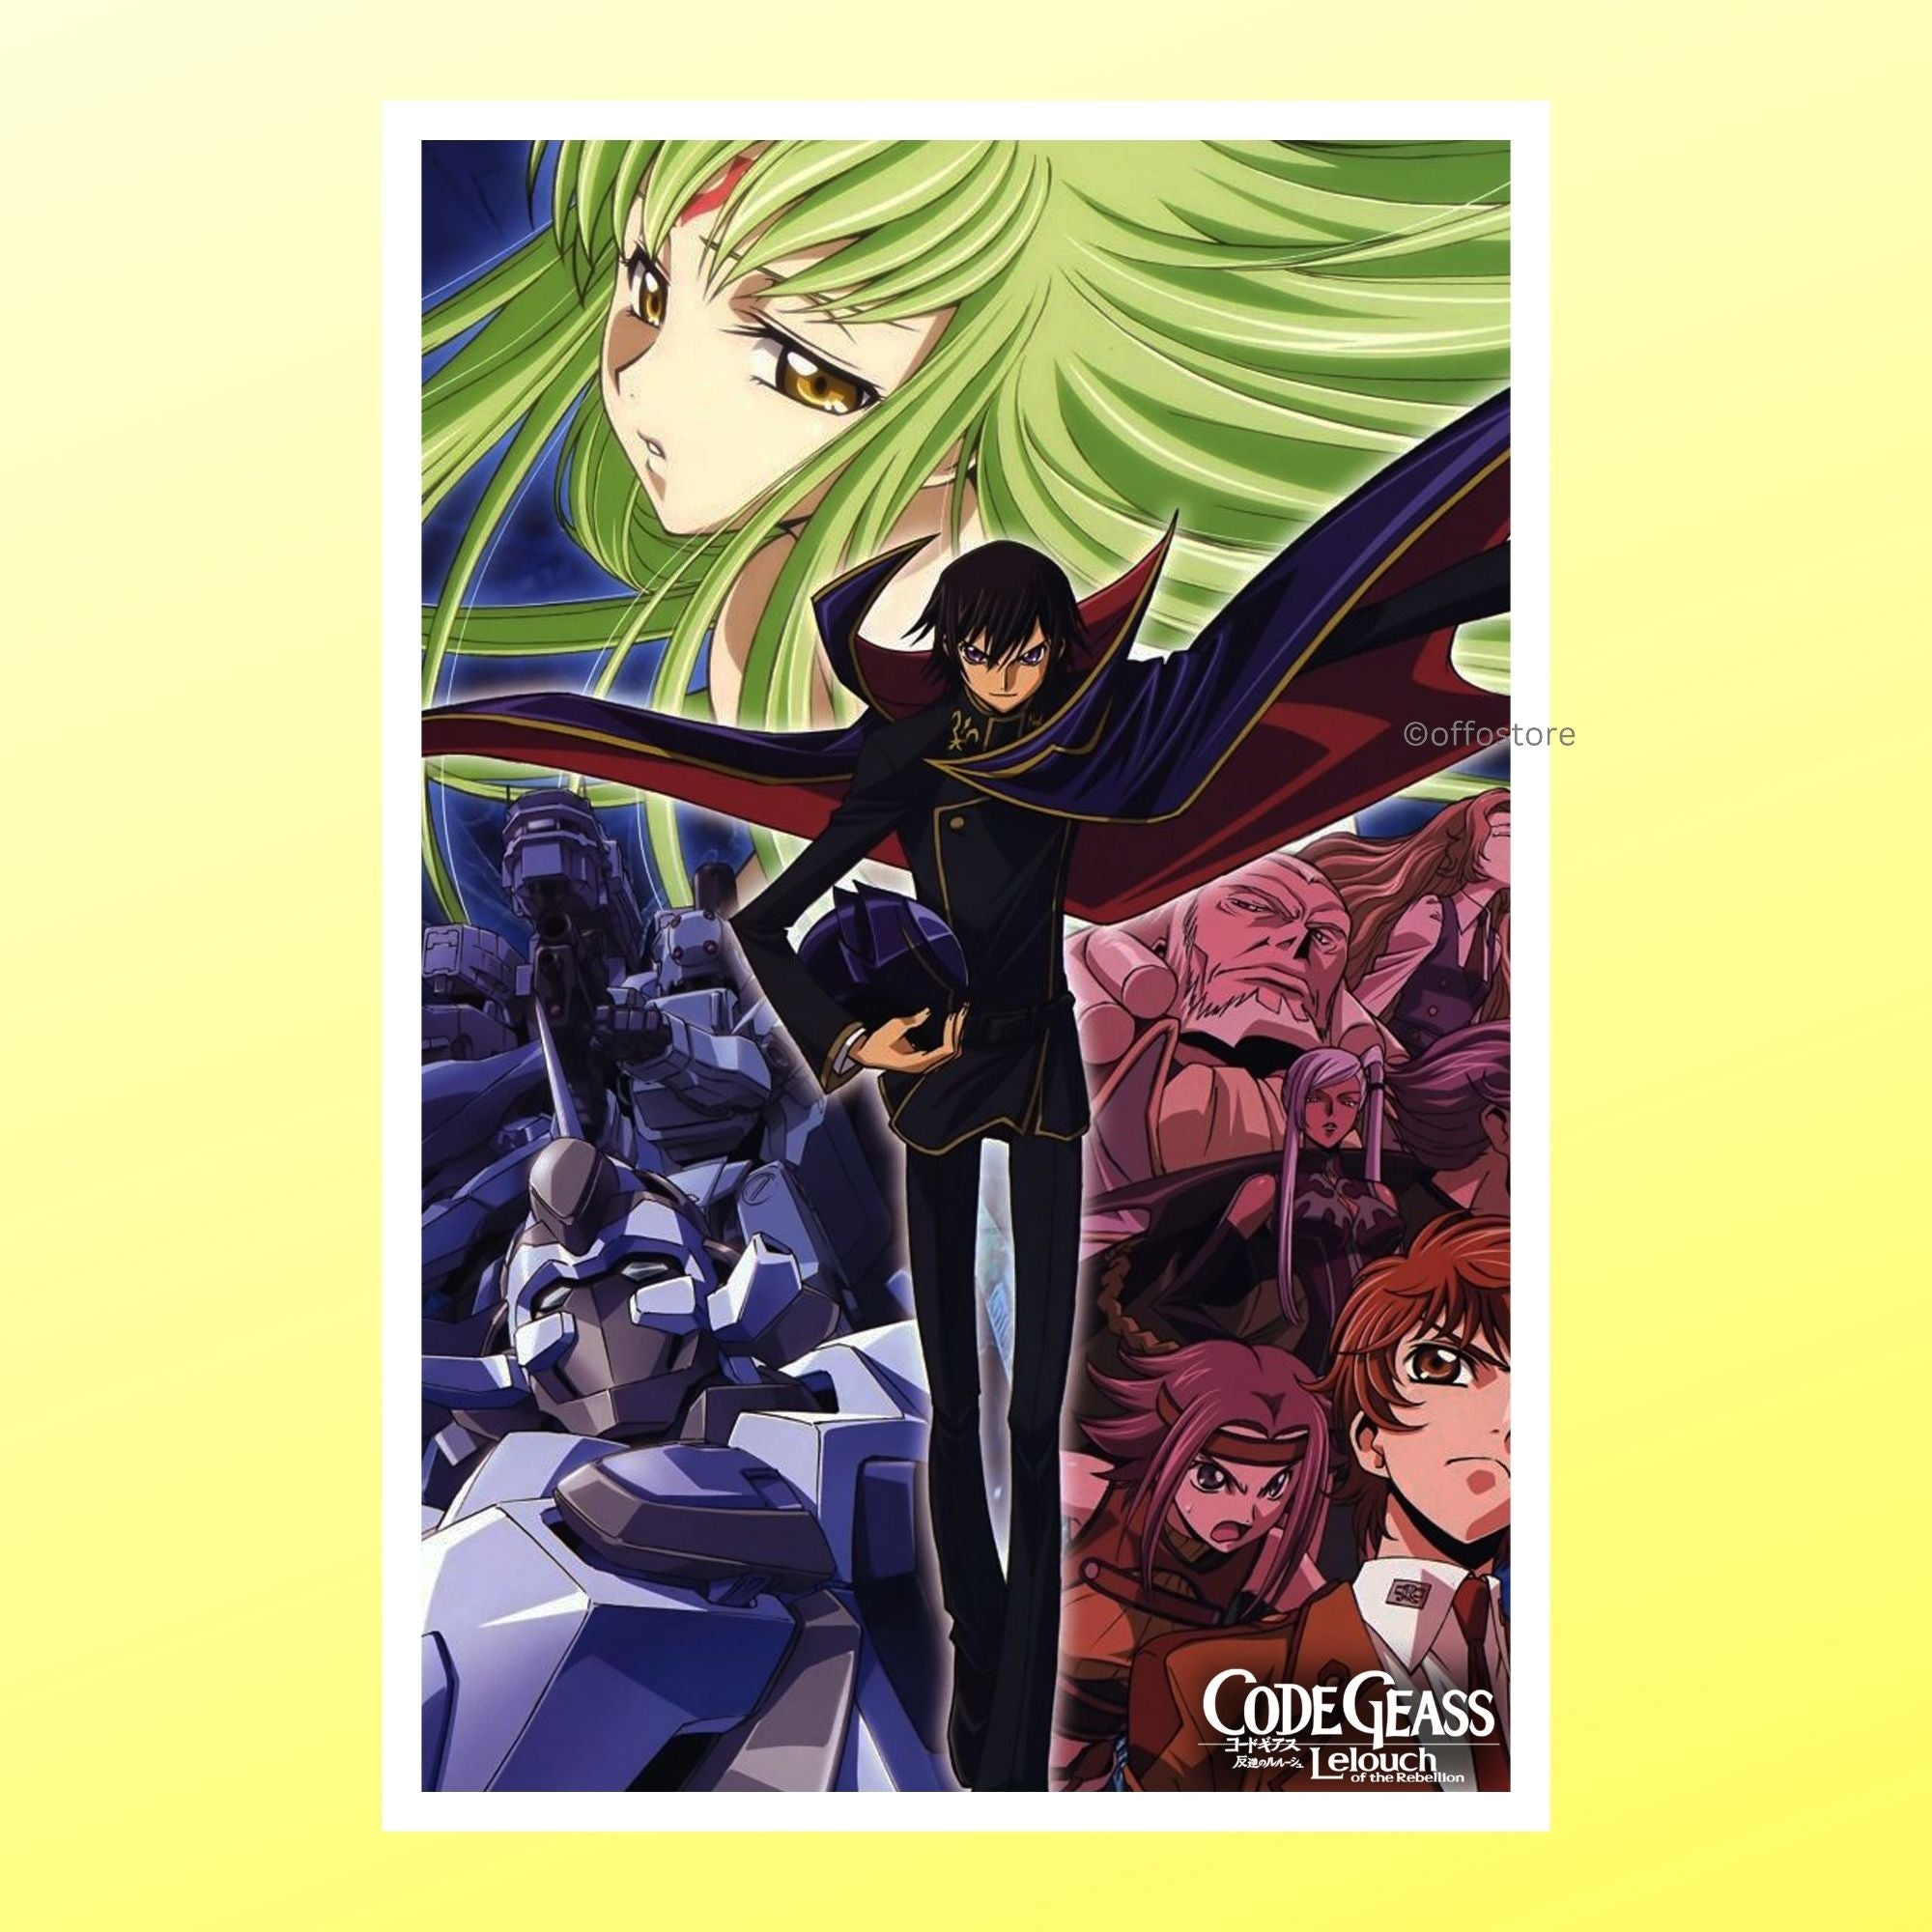 Code Geass Anime Wall Poster